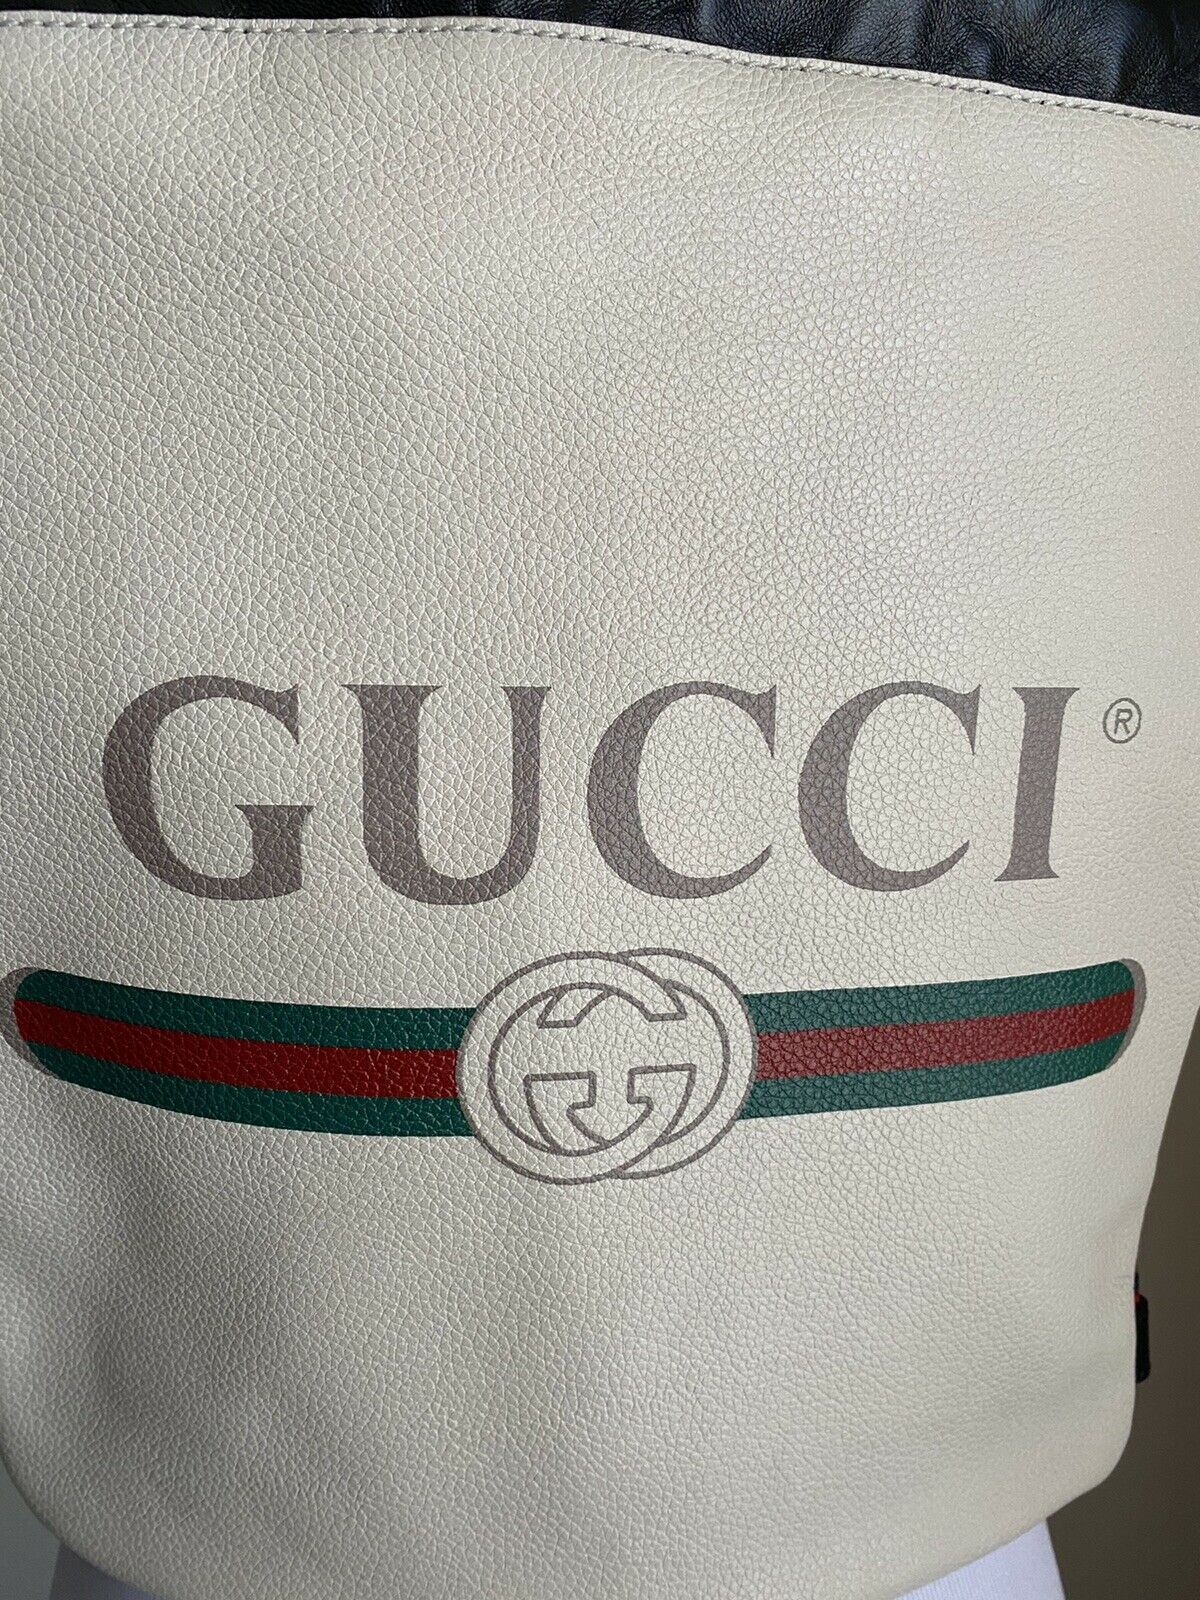 Neue Gucci GG Monogramm Leder Rucksack Tasche Hellbraun/Schwarz 523586 Italien